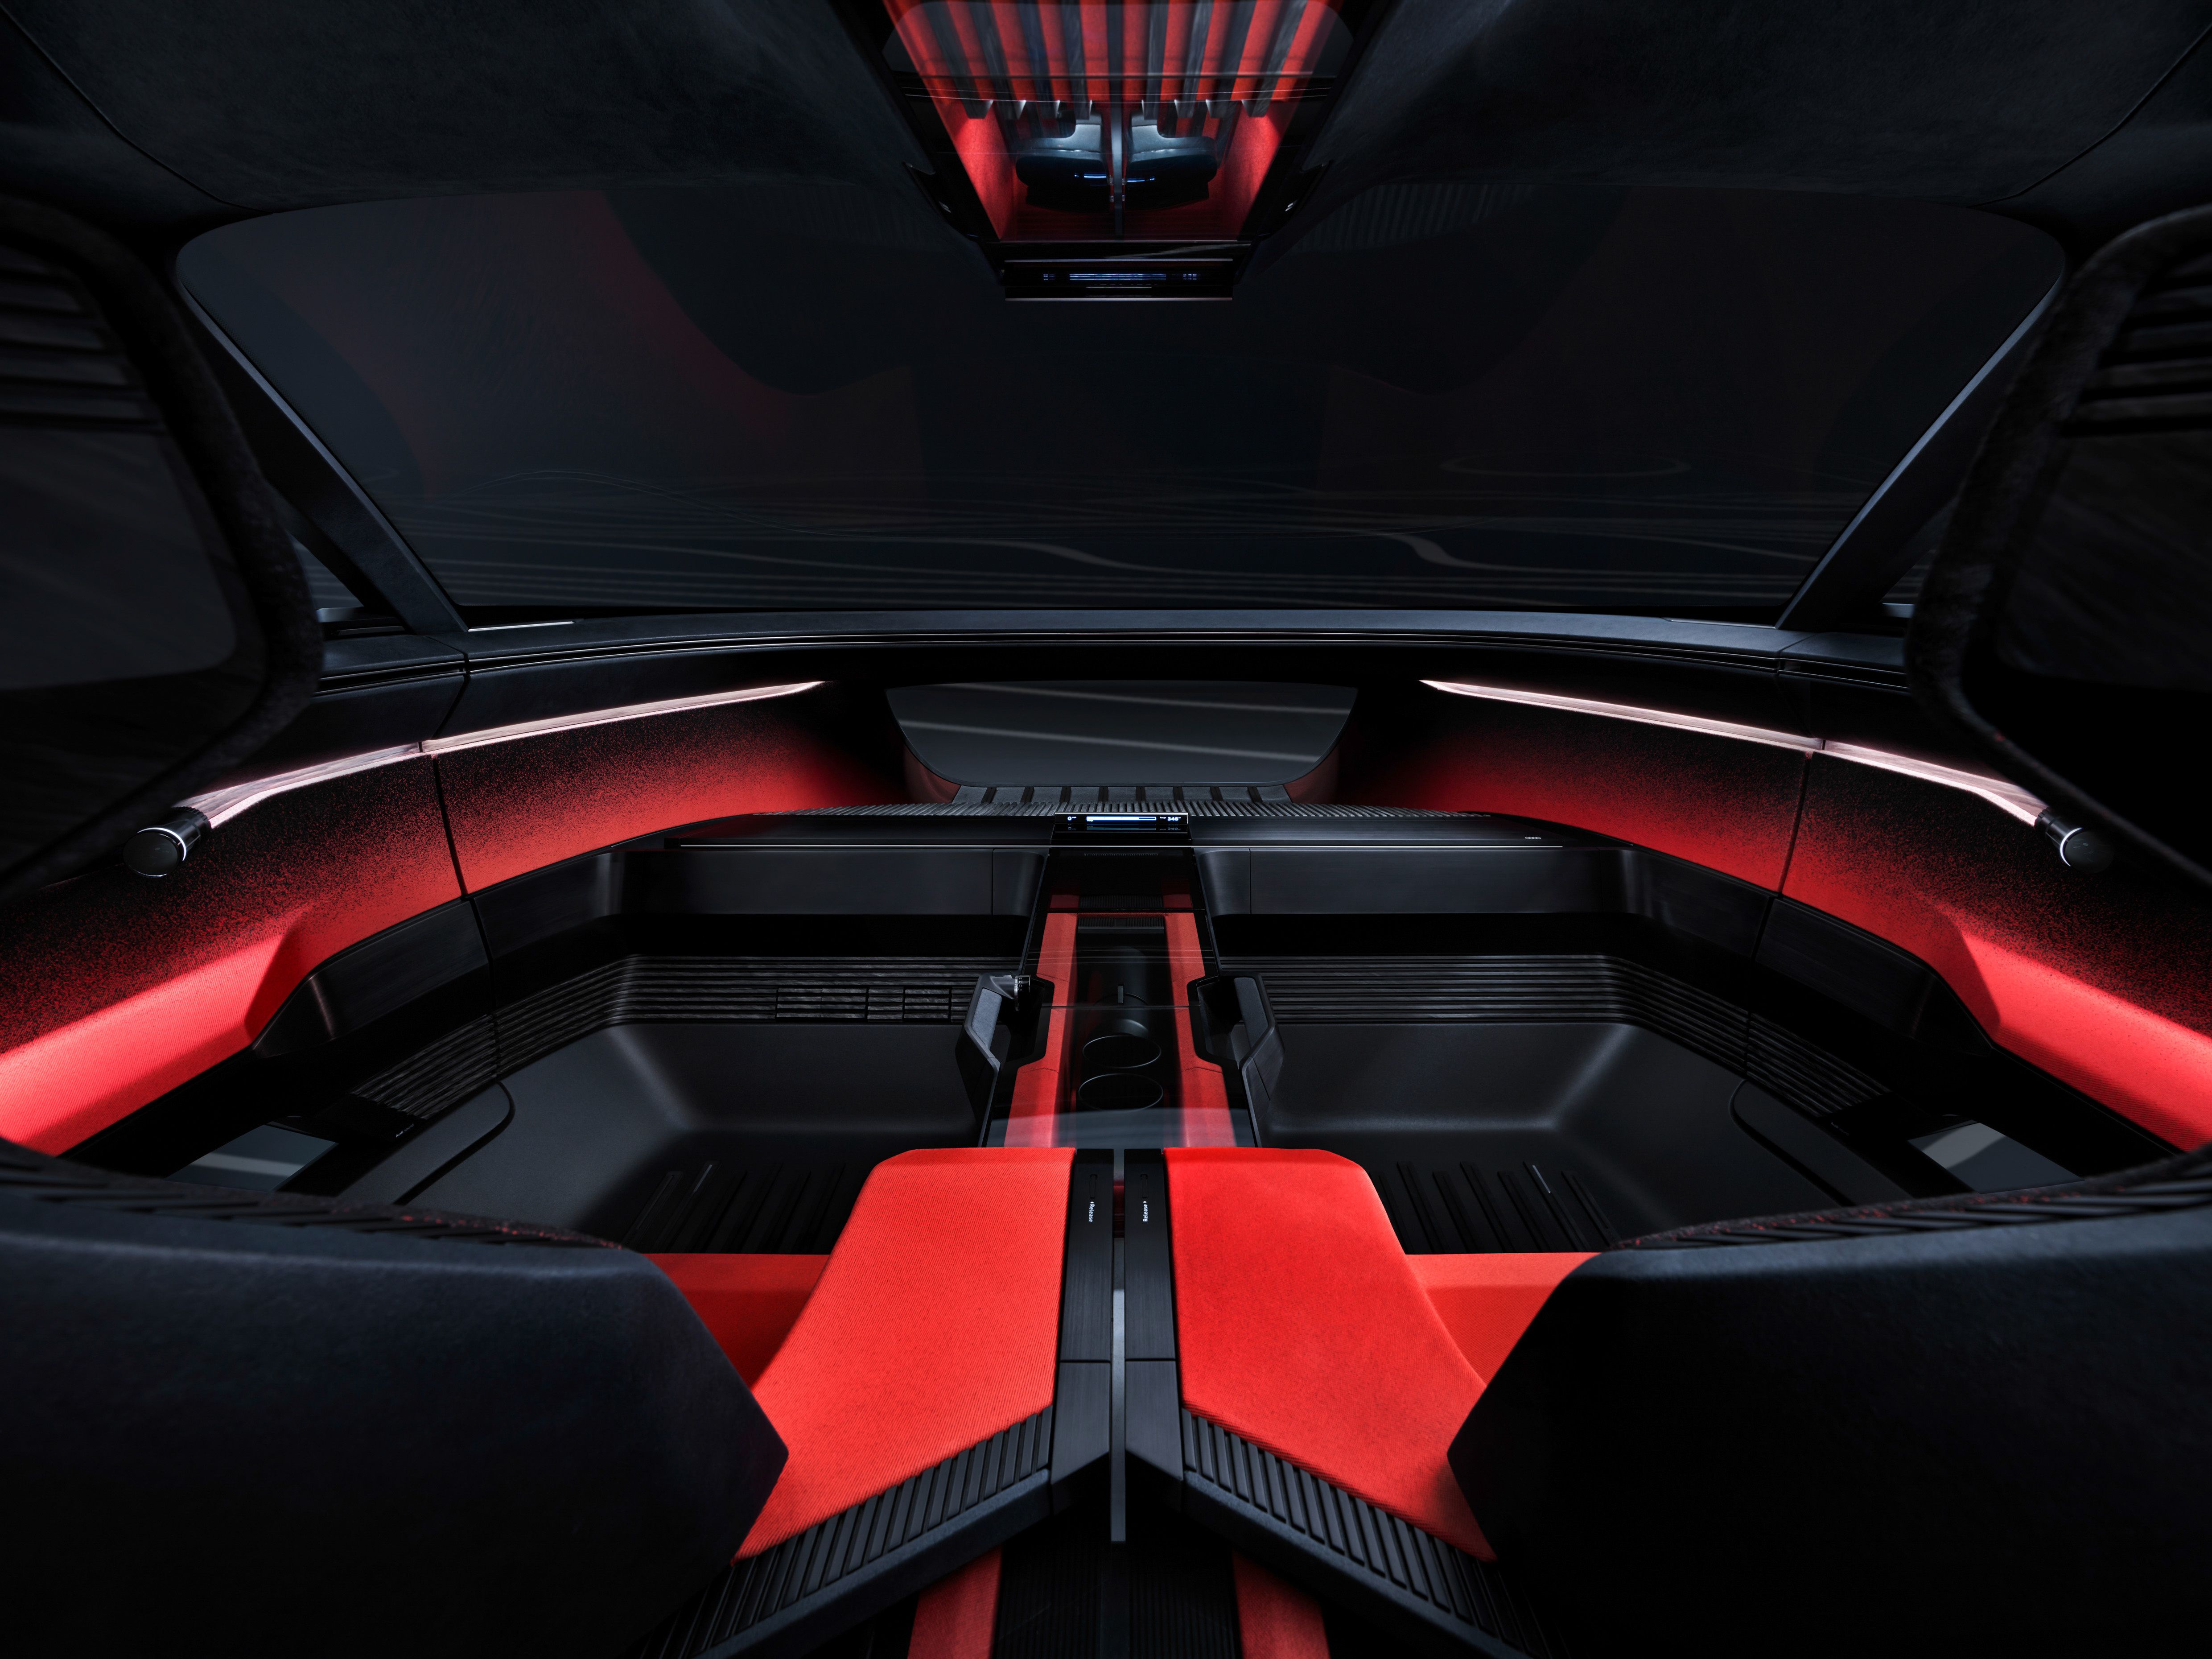 Audi Activesphere Concept Car